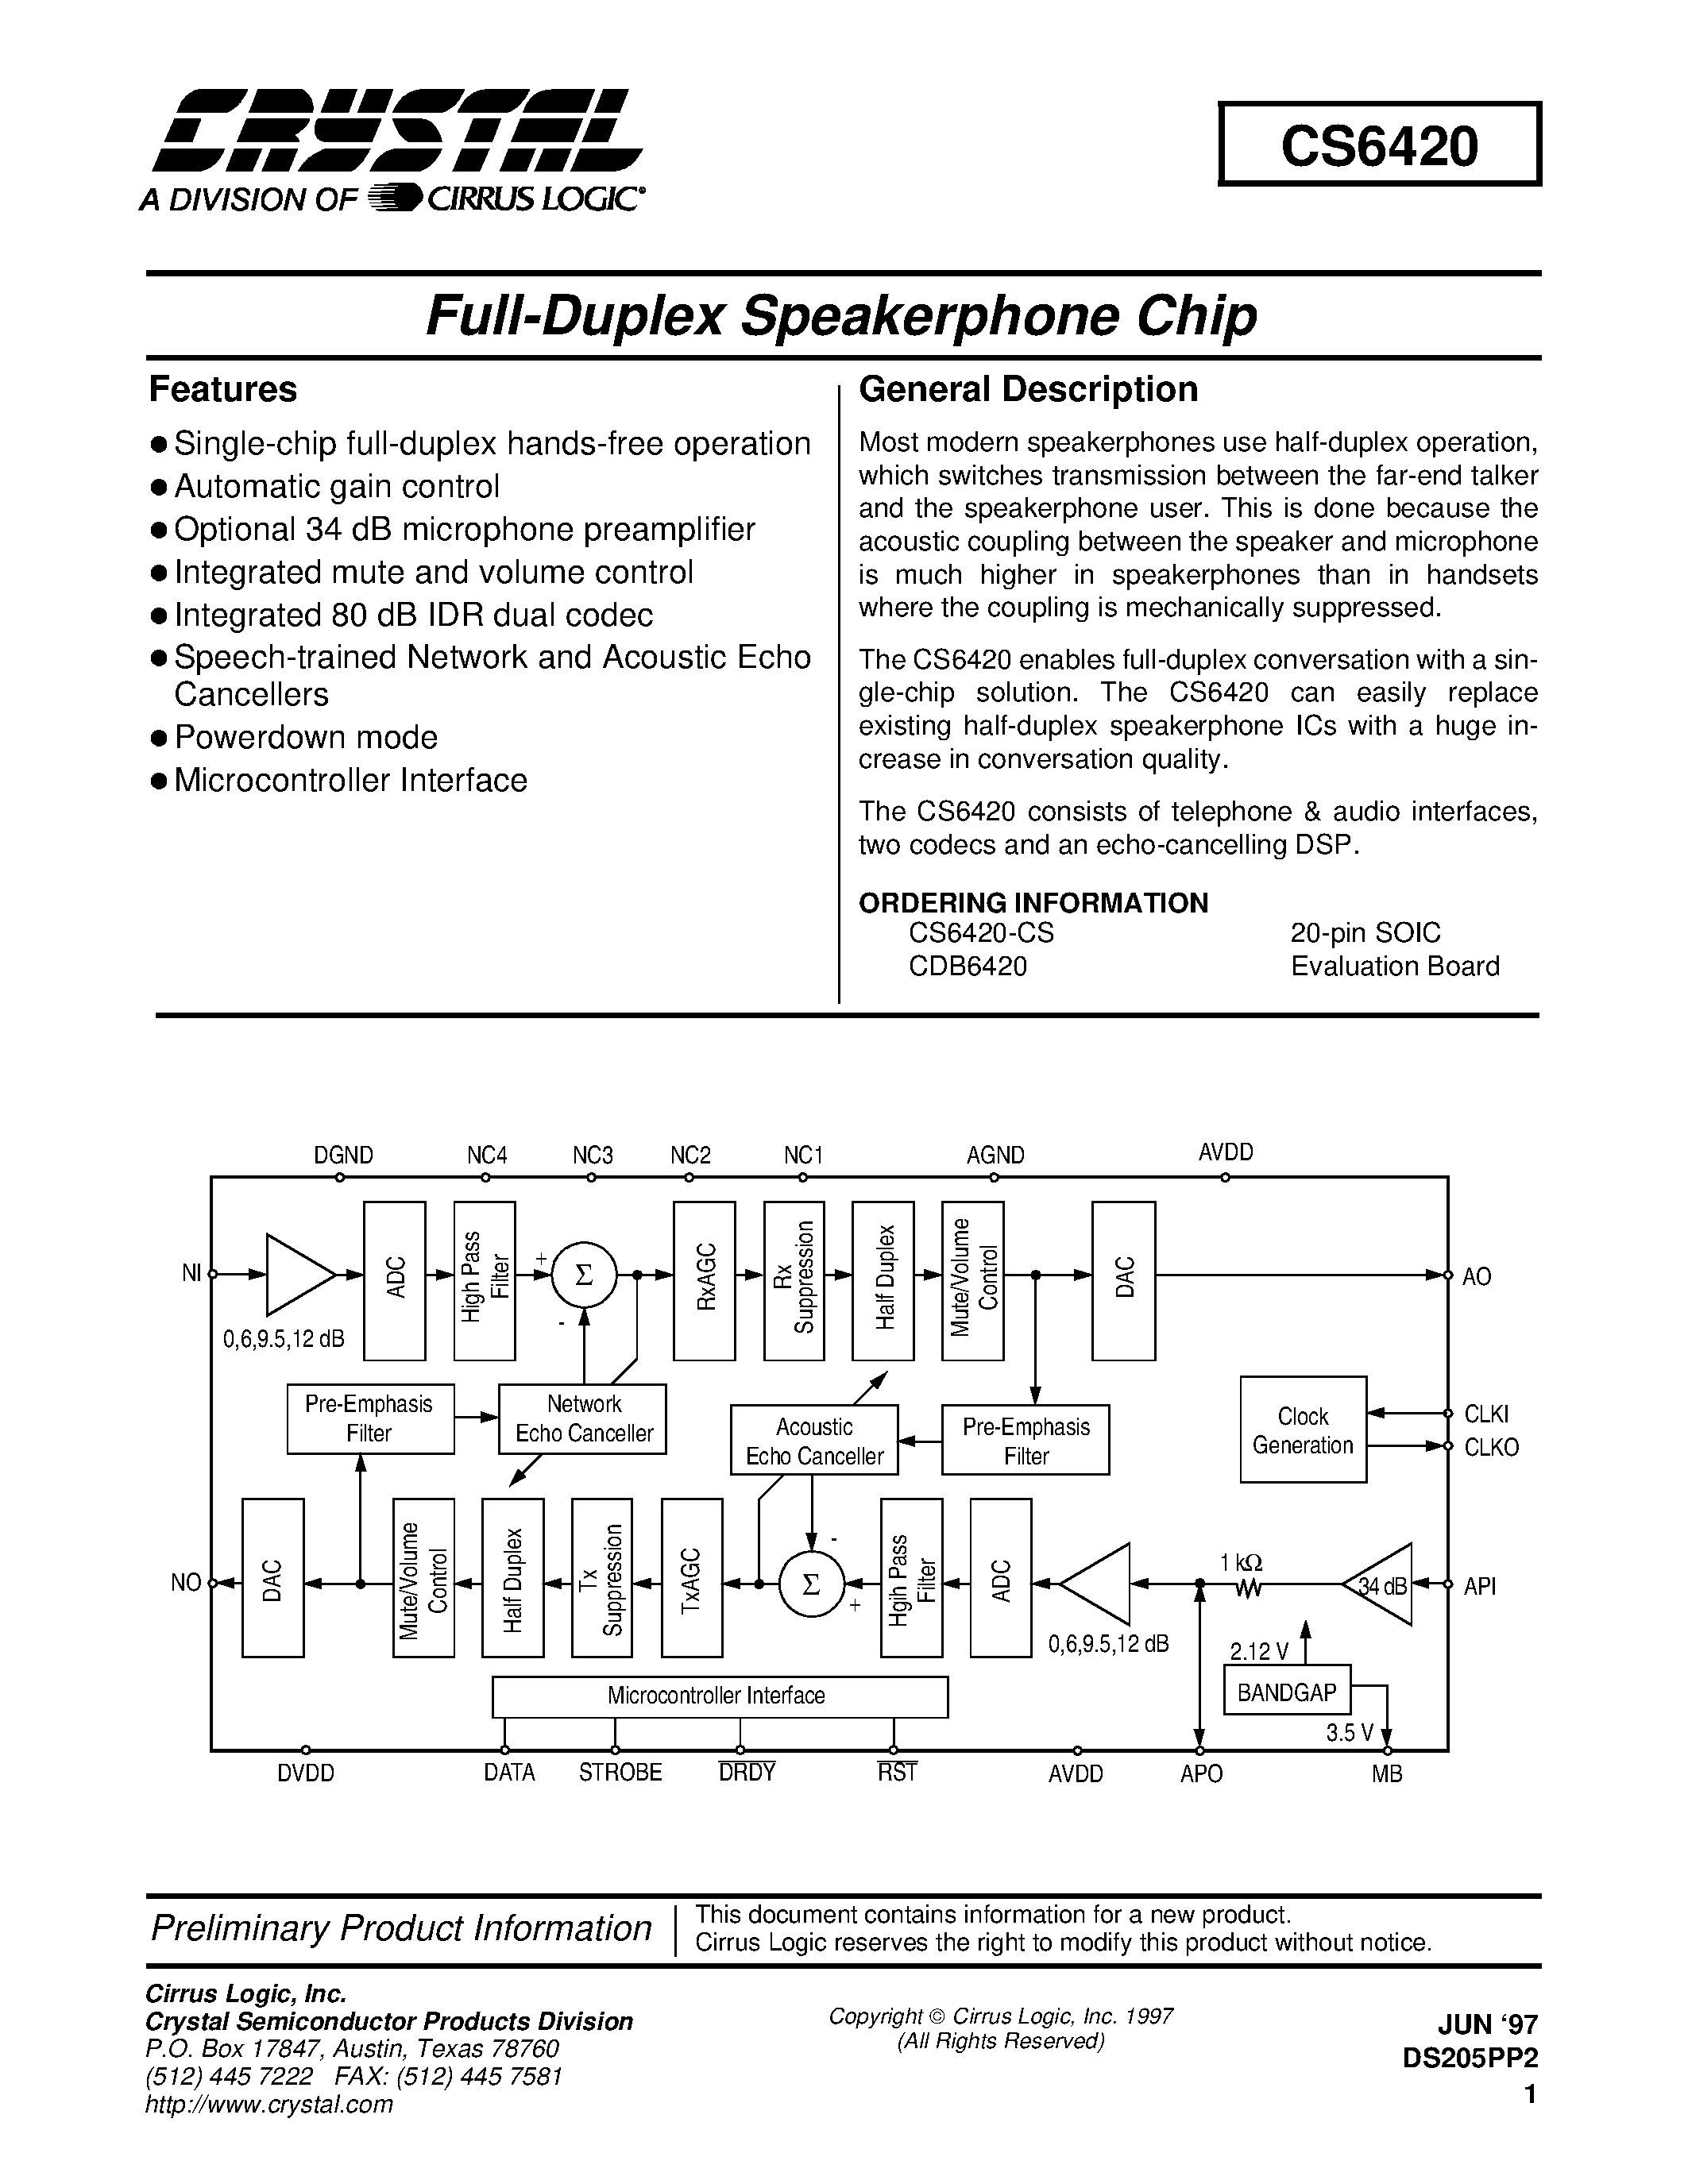 Даташит CD6420-FULL DUPLEX SPEAKERPHONE CHIP страница 1